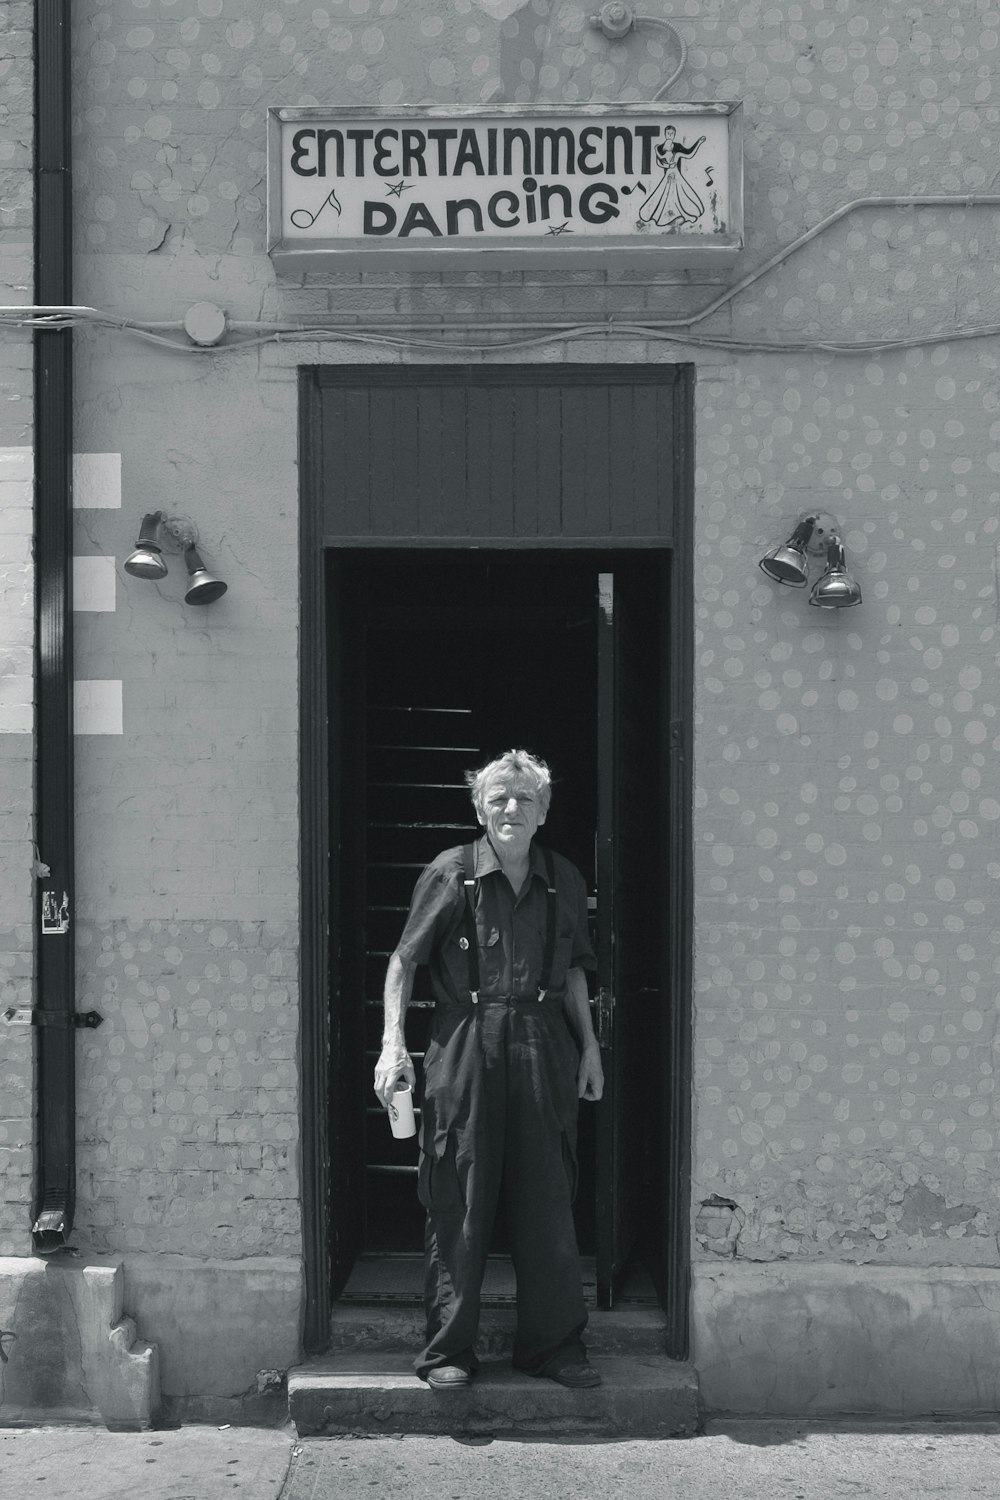 foto in scala di grigi di uomo che indossa top con colletto e pantaloni eleganti in piedi tra il muro di cemento vicino all'edificio della segnaletica di Entertainment Dancing